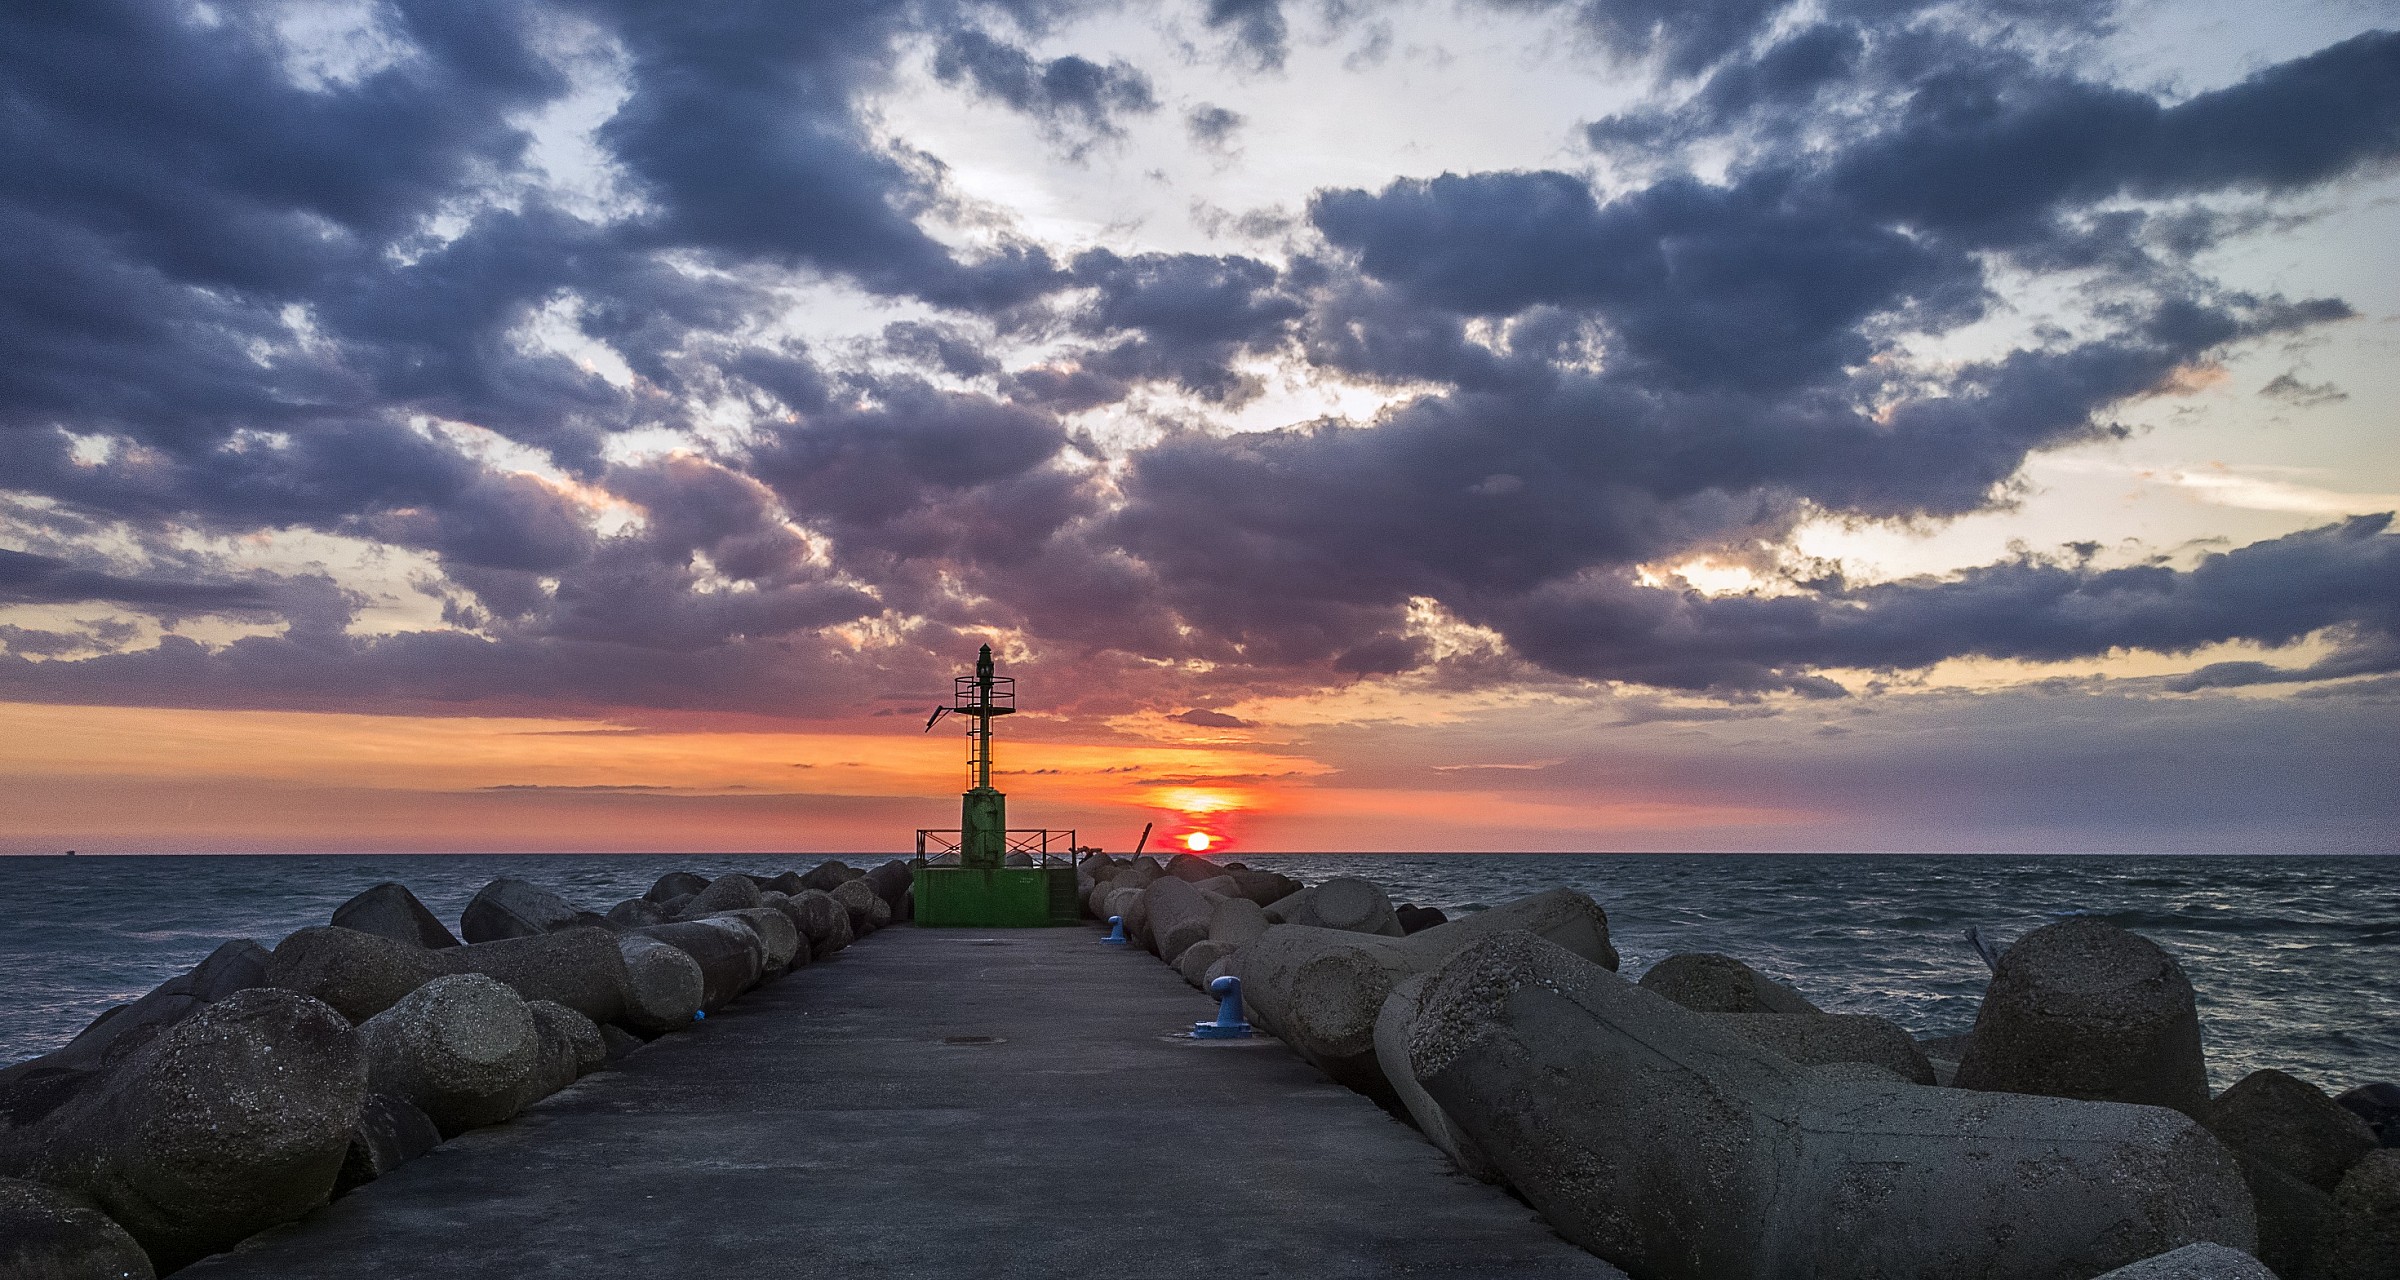 Sunset at the pier - Nokia Lumia 1020...